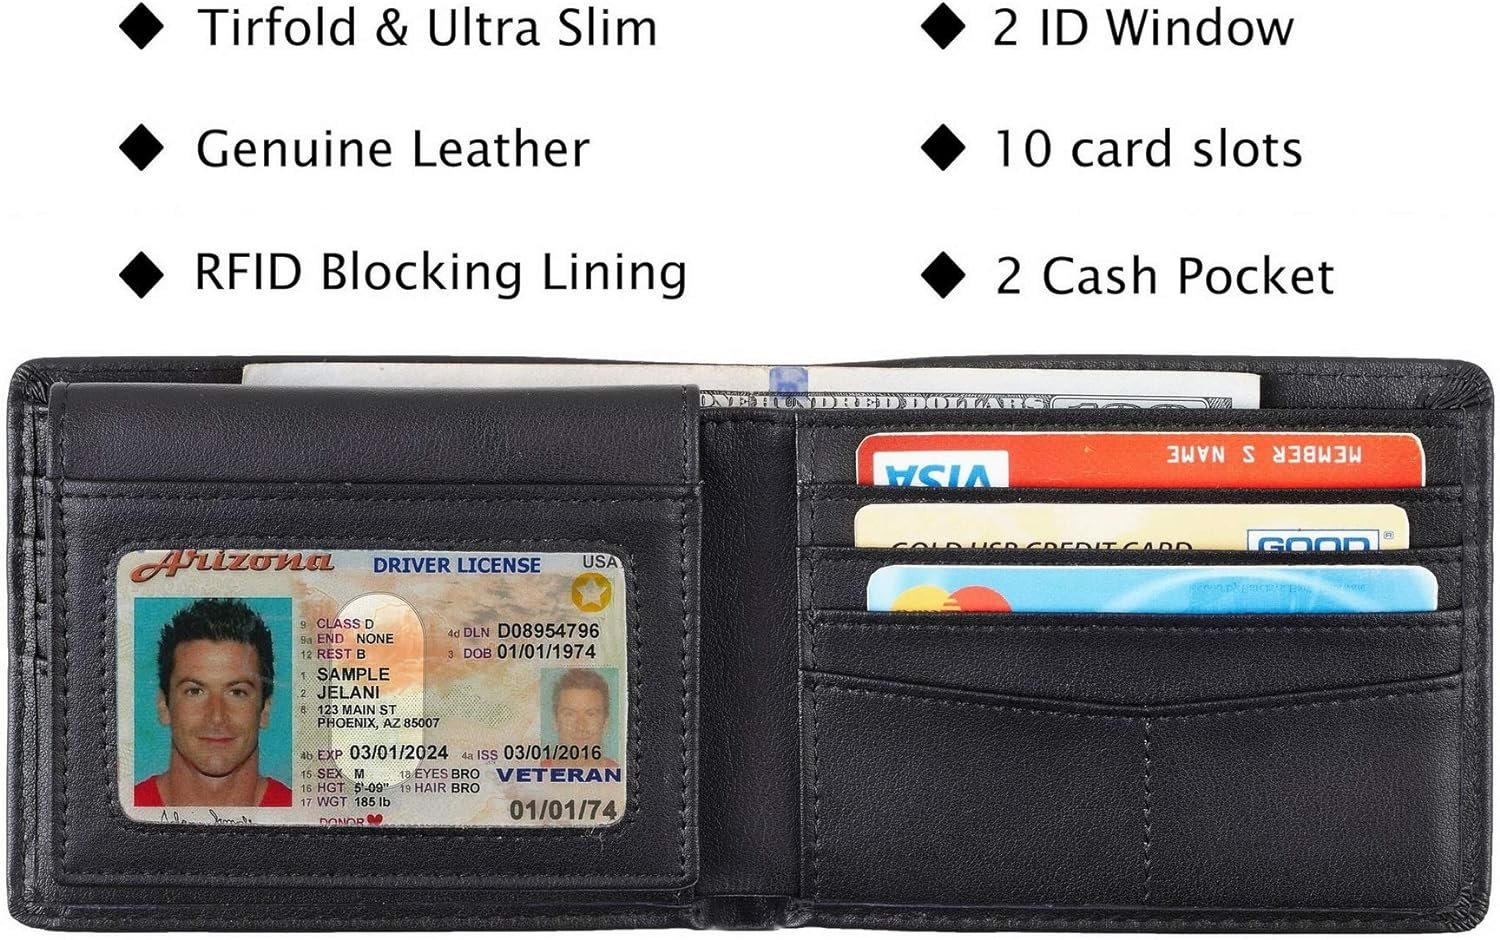 Travelambo RFID Blocking Wallet Review